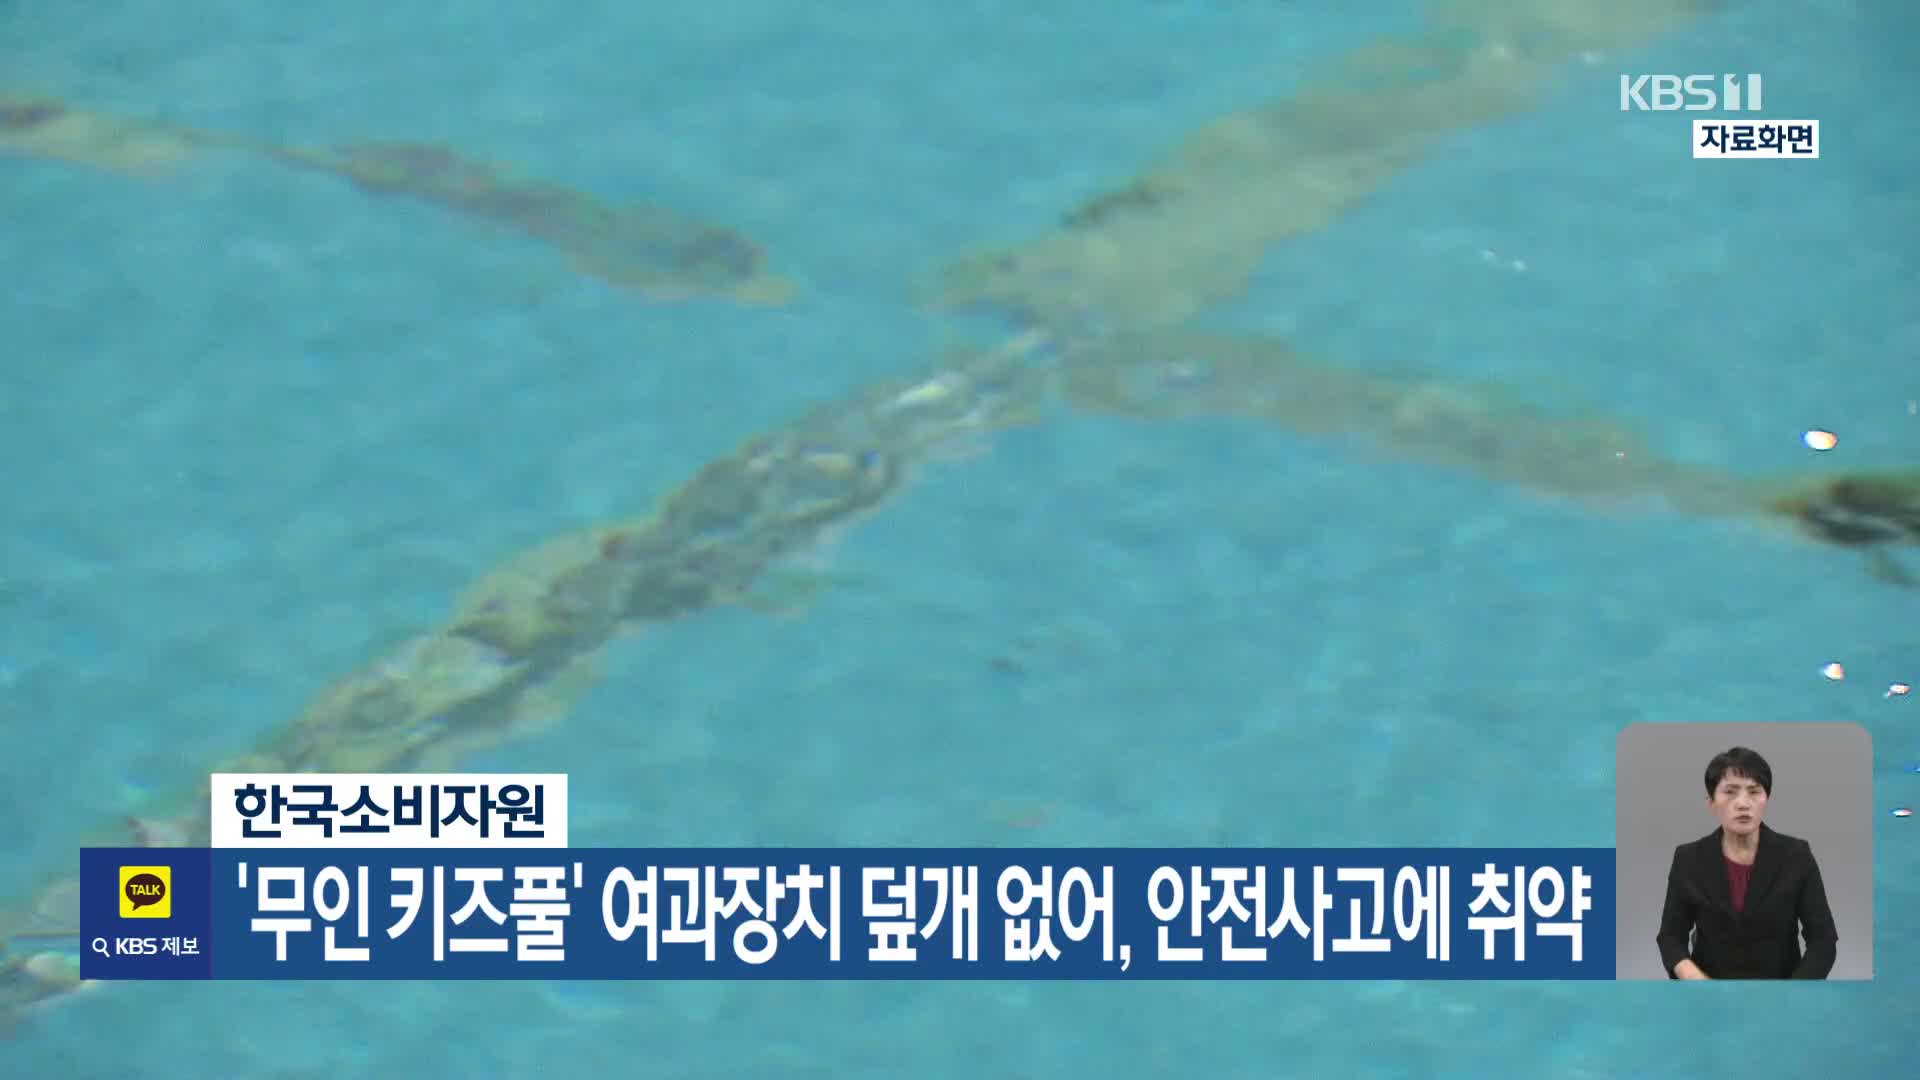 한국소비자원, ‘무인 키즈풀’ 여과장치 덮개 없어, 안전사고에 취약